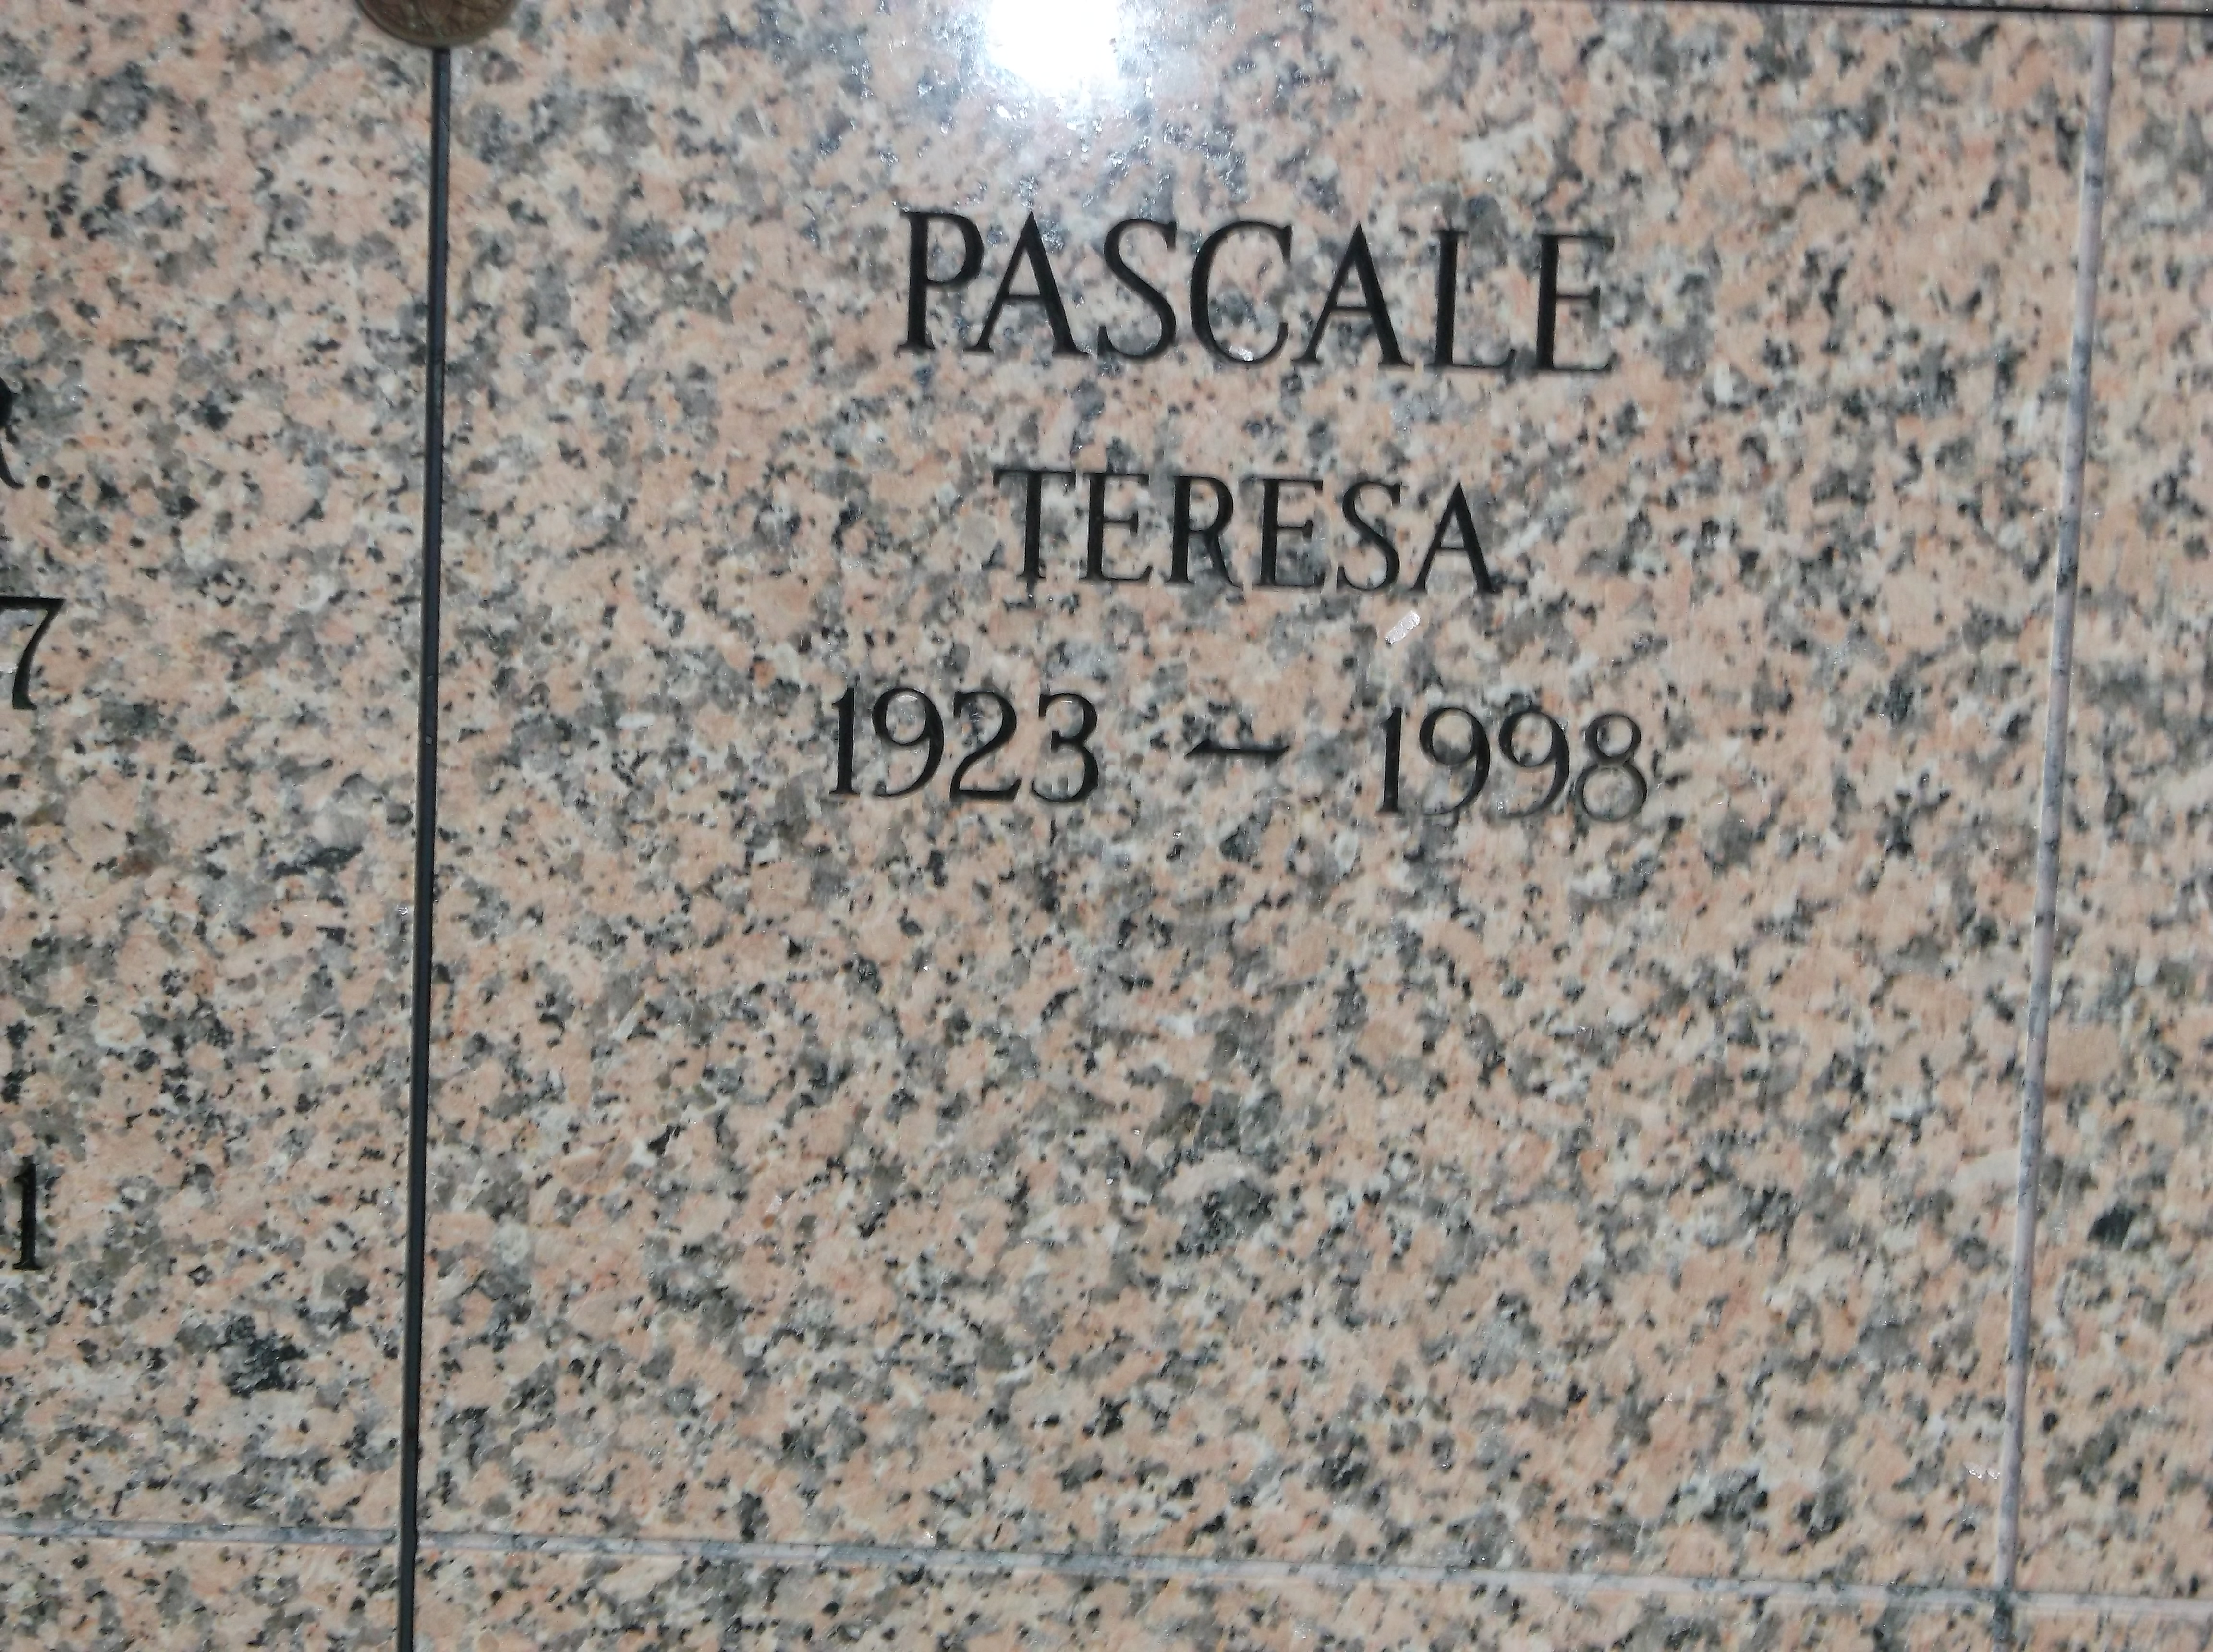 Teresa Pascale